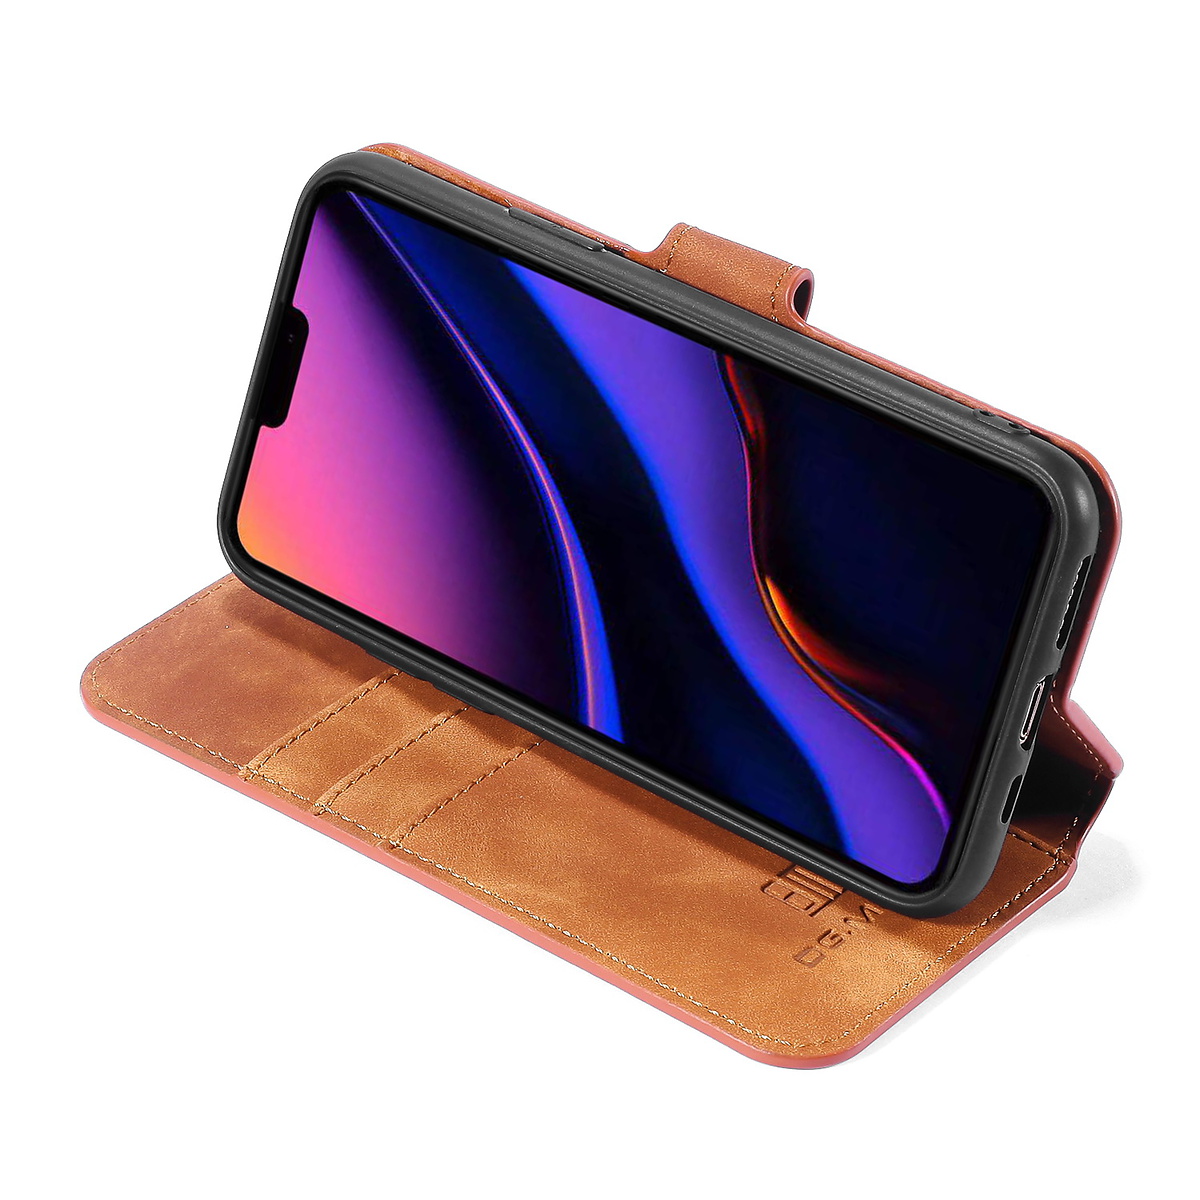 DG.MING Retro läderfodral med ställ till iPhone 11 Pro, brun